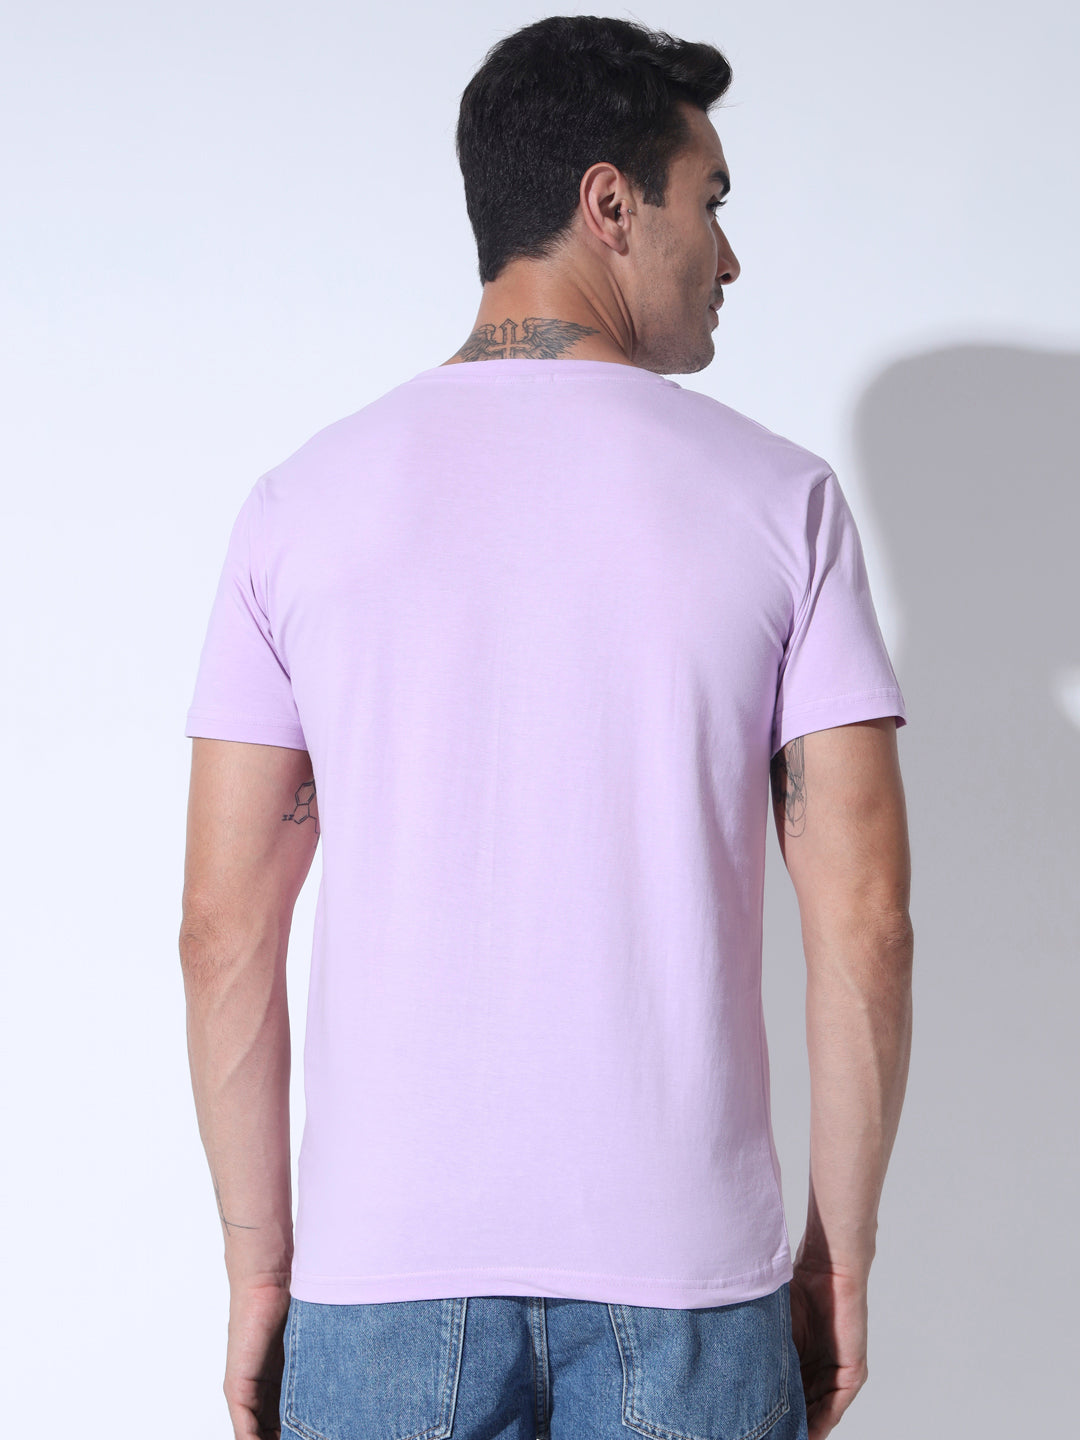 Classy Lavender  Tshirt